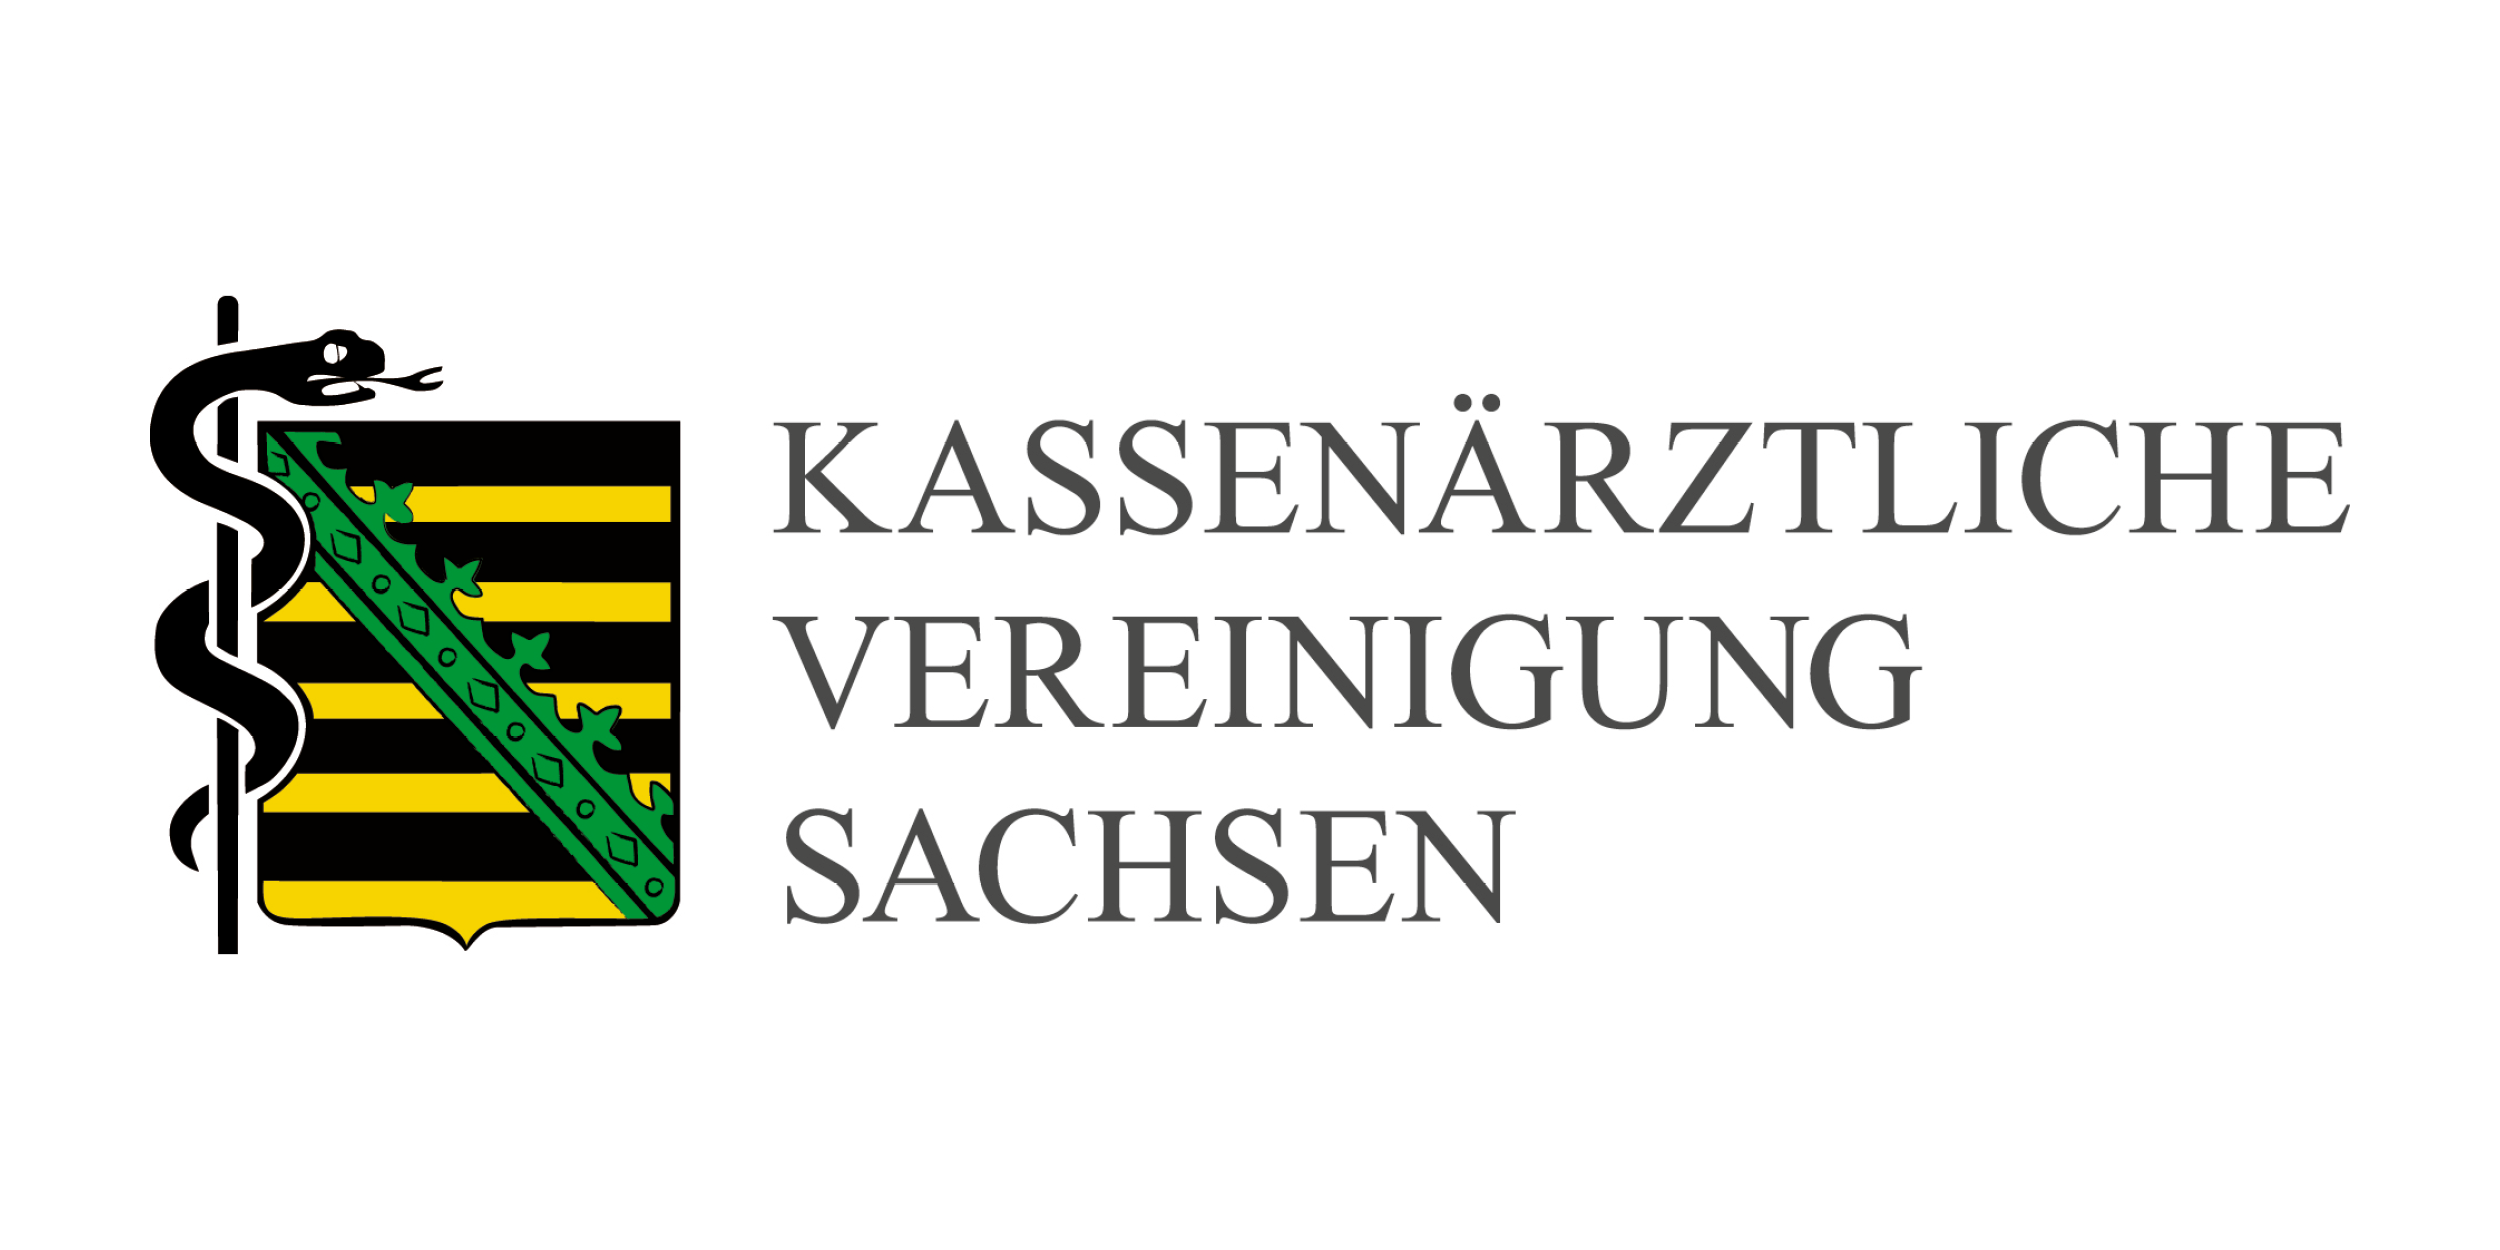 Das Bild zeigt das Logo der KV Sachsen.